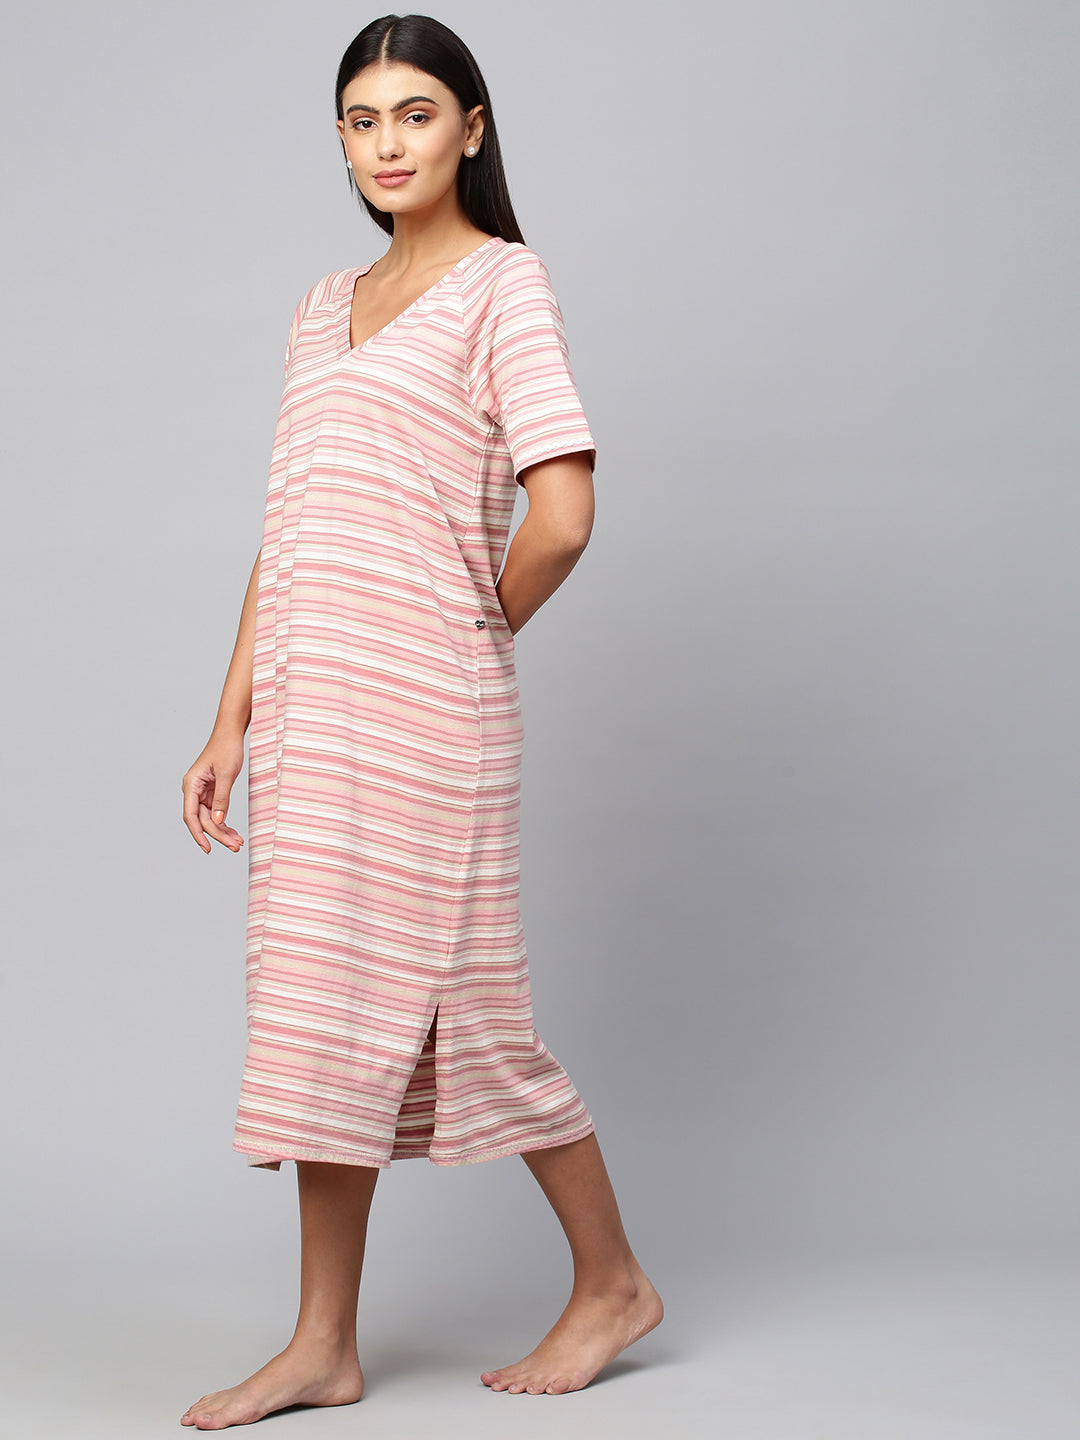 Cotton Viscose Striped Nightdress